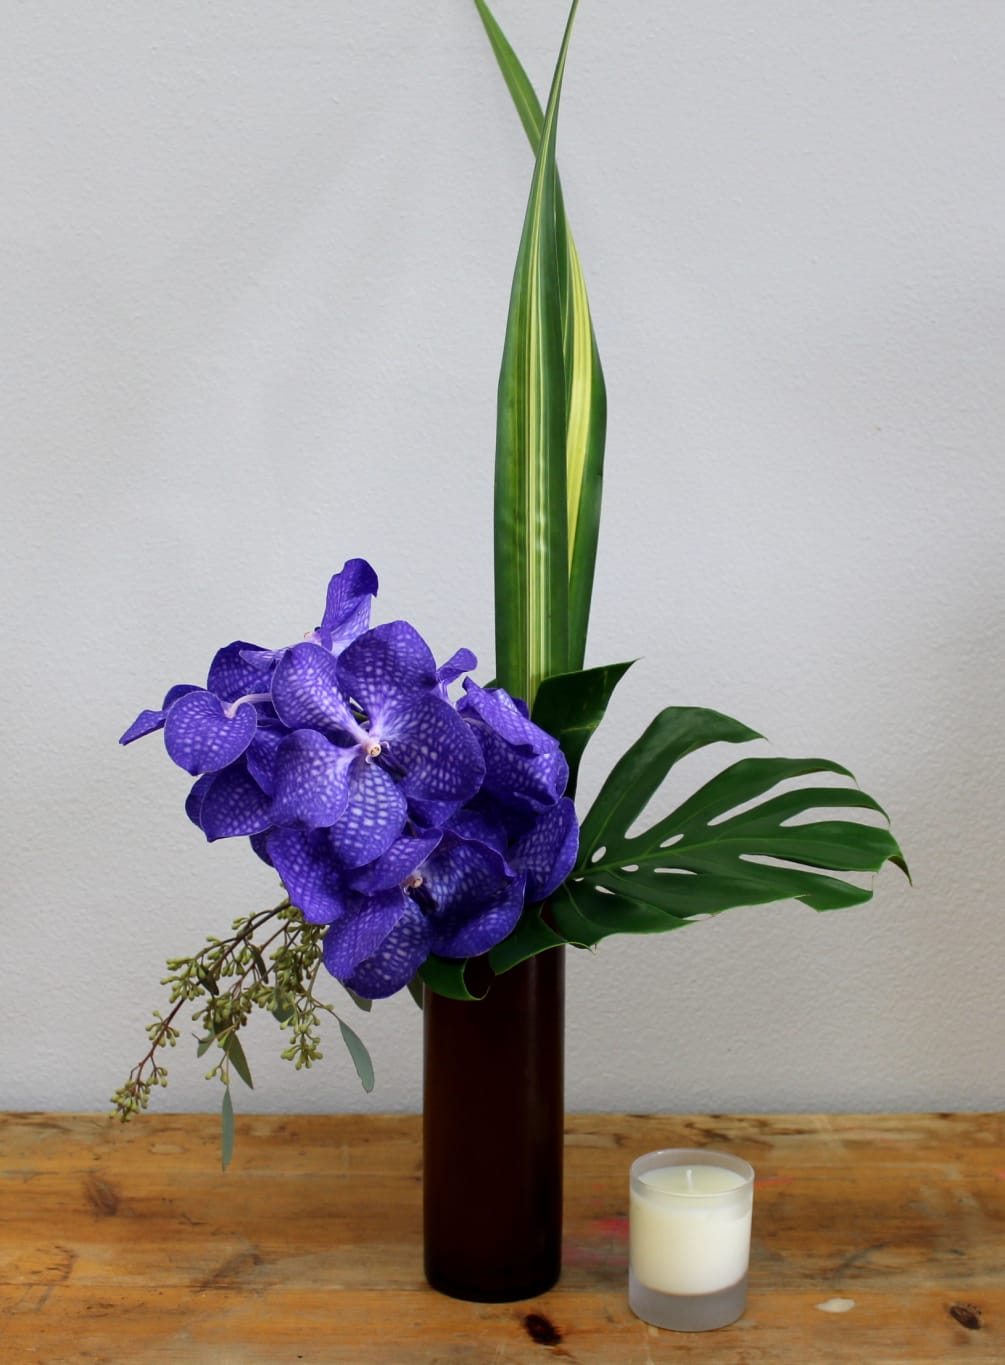 Vanda Orchid Arrangement by Manhattan Village Florist & Gifts